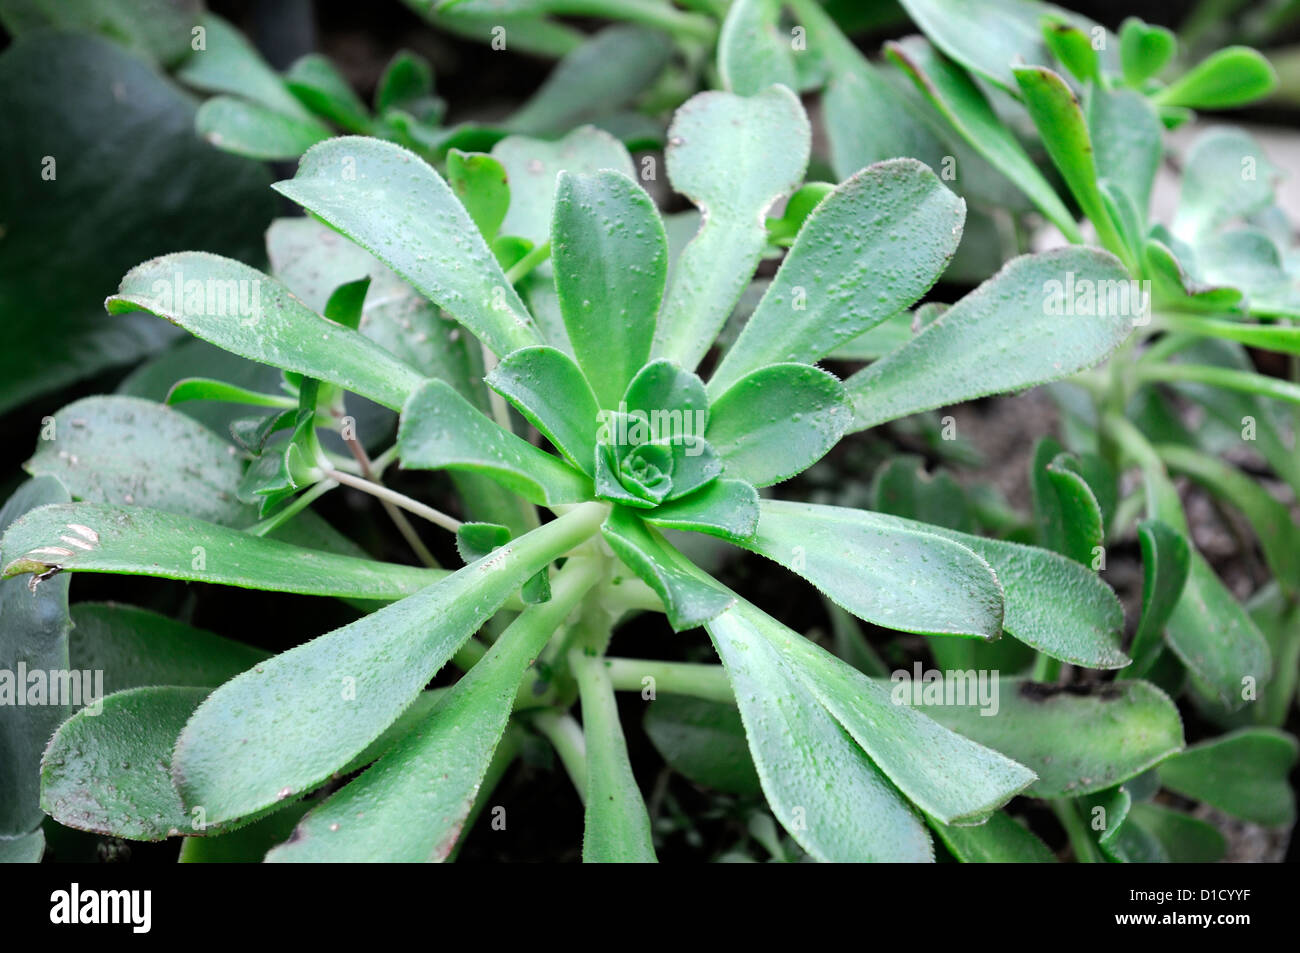 Aeonium sedifolium aeoniums succulentes libre feuillage feuillage vert plante charnue rosettes portraits d'épaisseur Banque D'Images